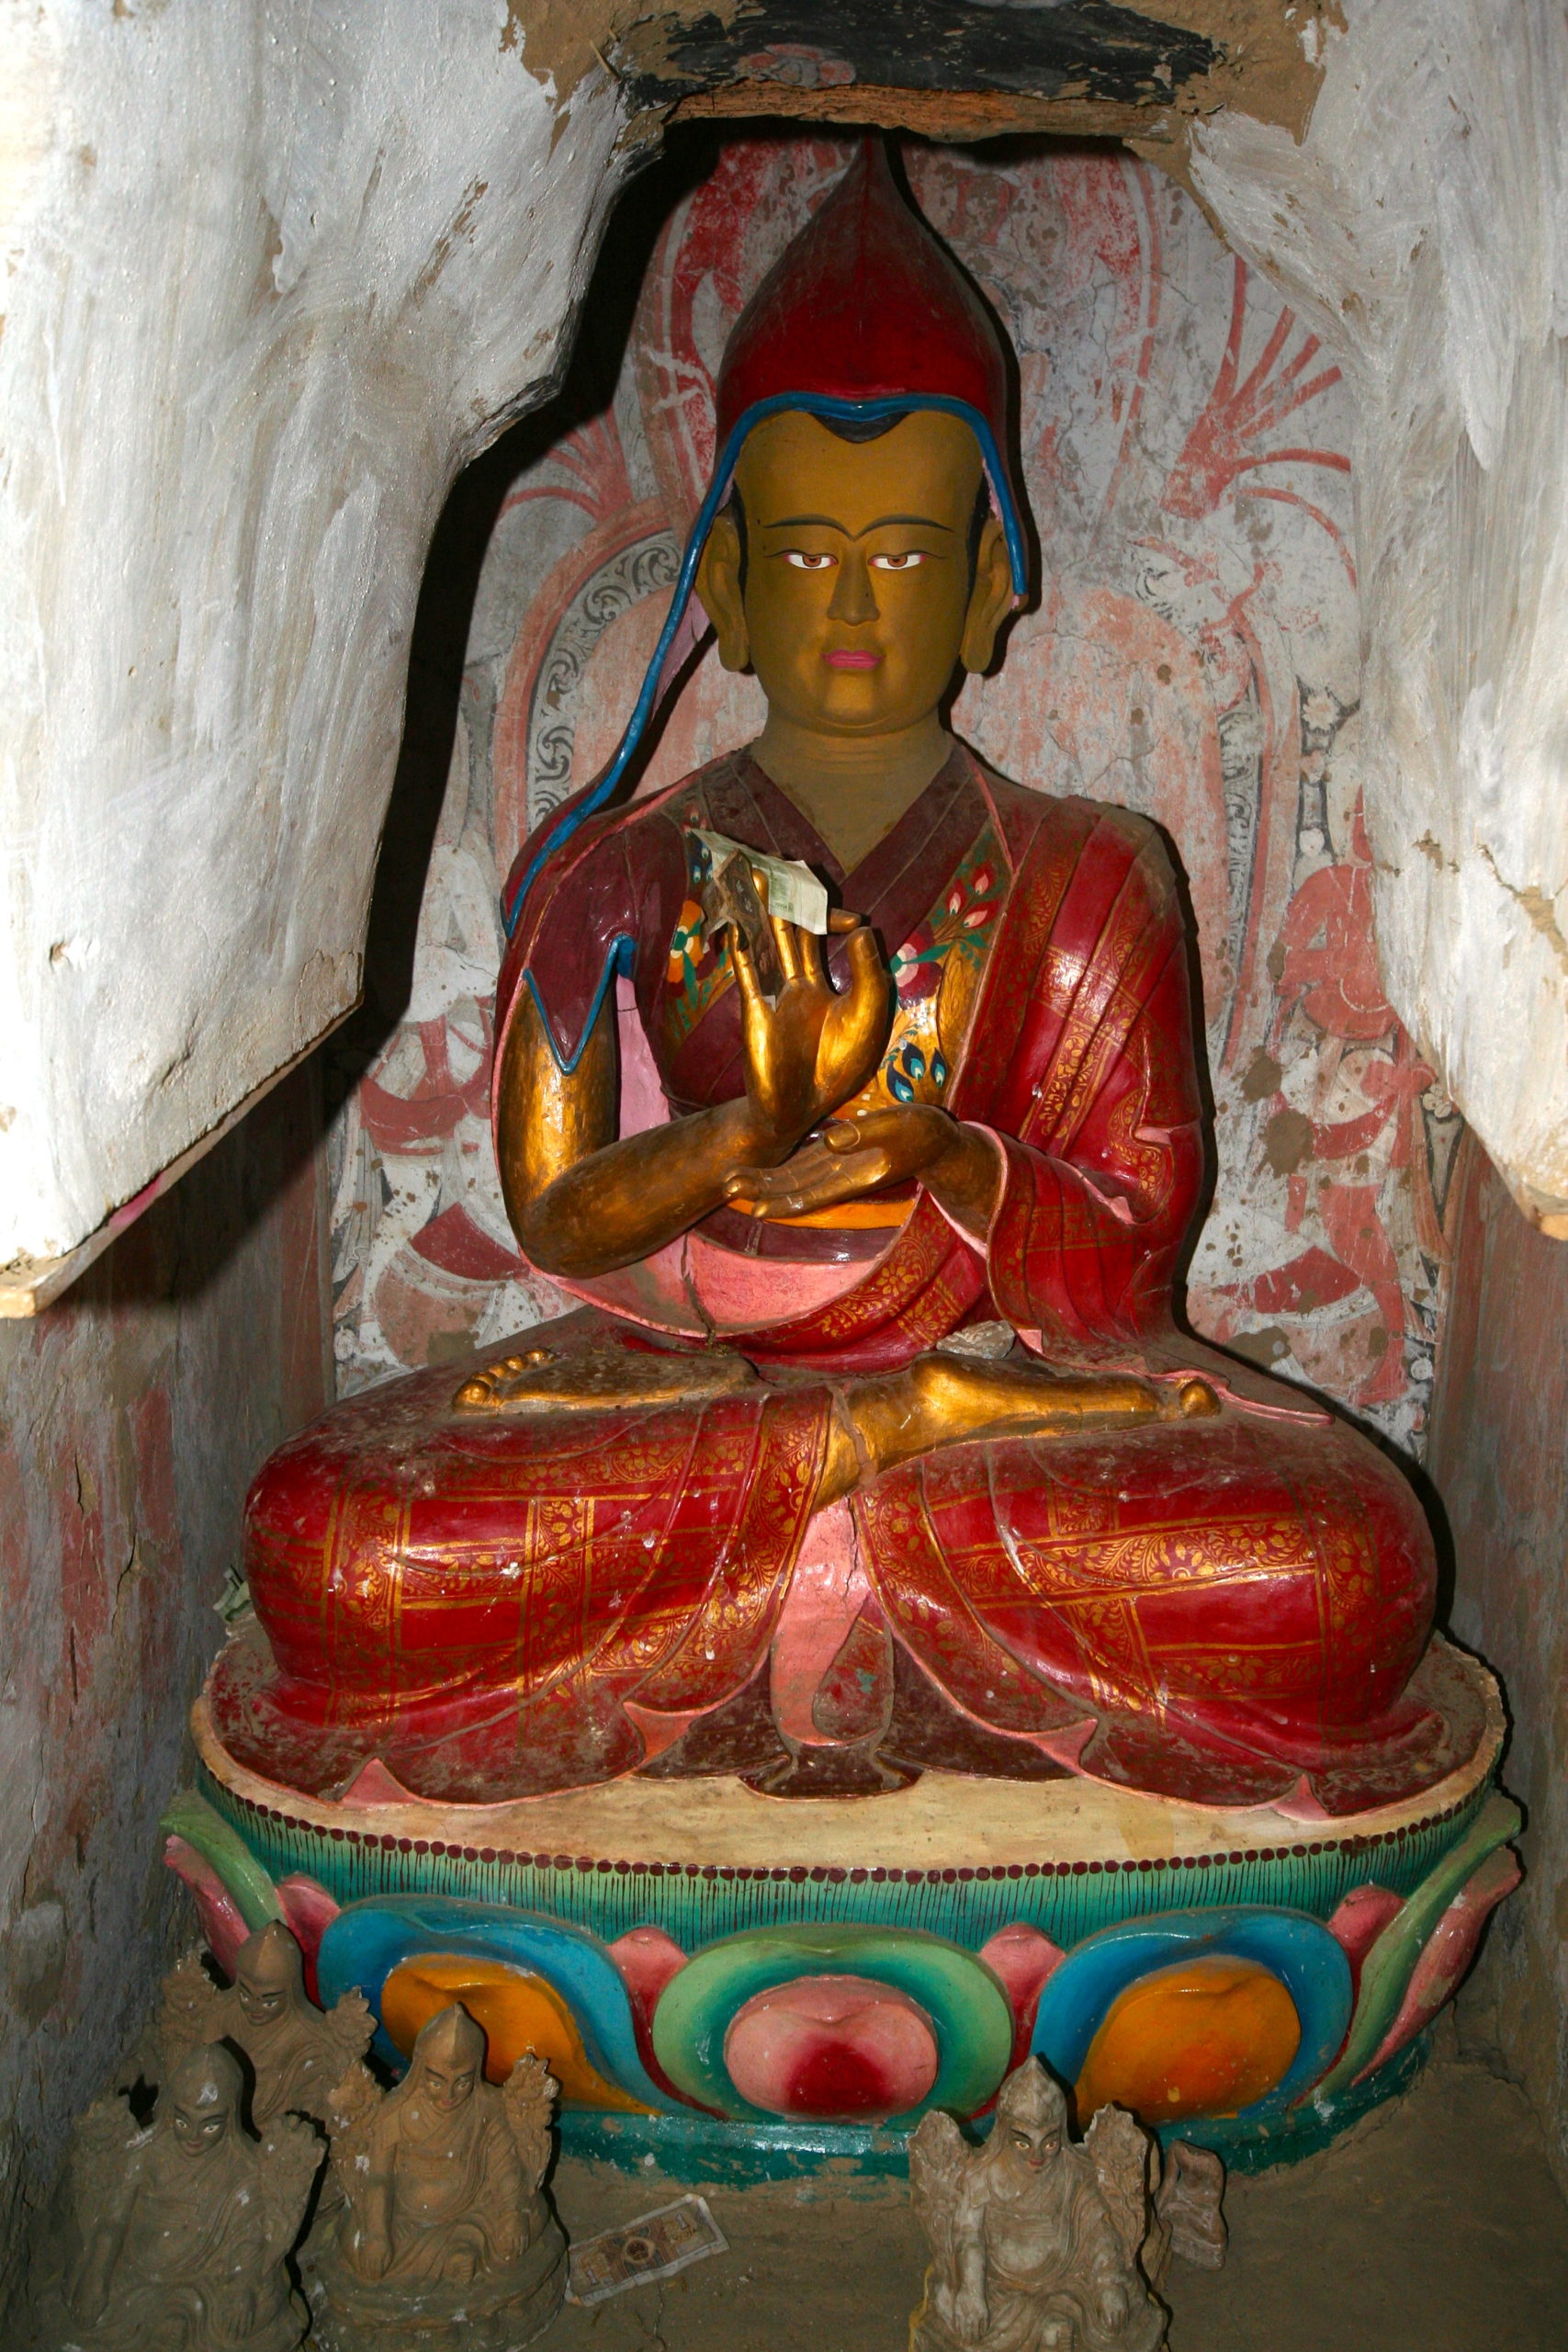 jf_statue_stupa_03